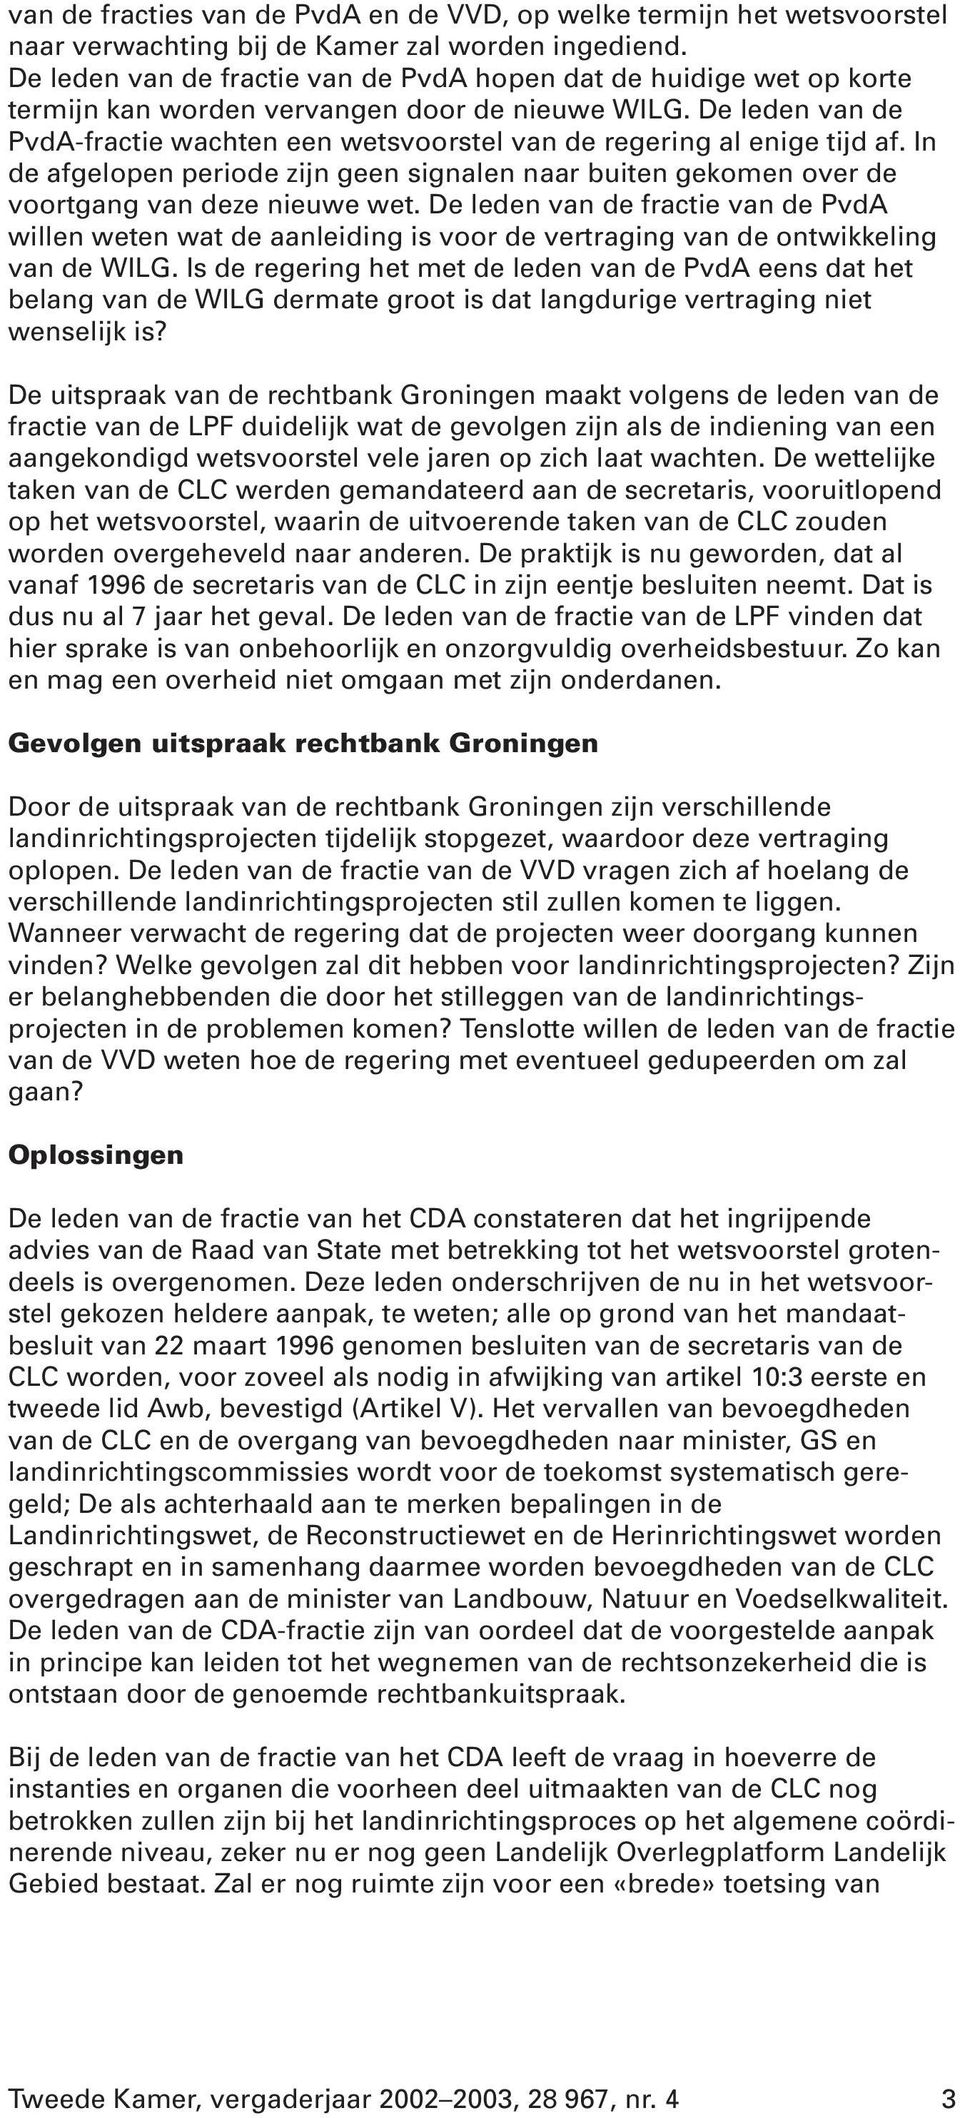 De leden van de PvdA-fractie wachten een wetsvoorstel van de regering al enige tijd af. In de afgelopen periode zijn geen signalen naar buiten gekomen over de voortgang van deze nieuwe wet.